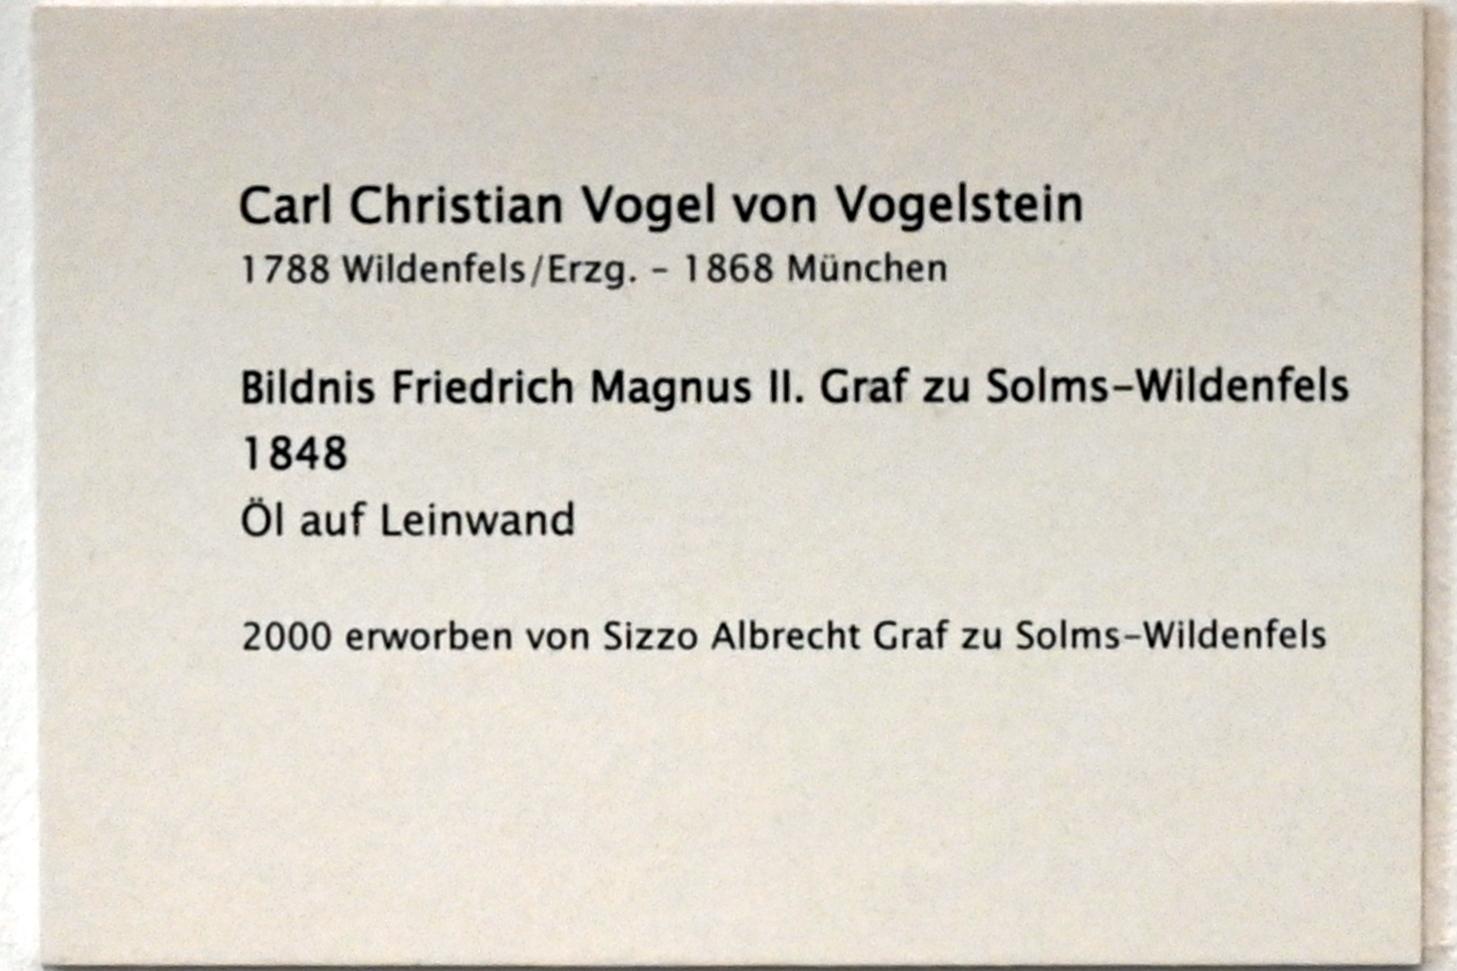 Carl Christian Vogel von Vogelstein (1816–1853), Bildnis Friedrich Magnus II. Graf zu Solms-Wildenfels, Zwickau, Kunstsammlungen, Zeit der Empfindsamkeit, 1848, Bild 2/2